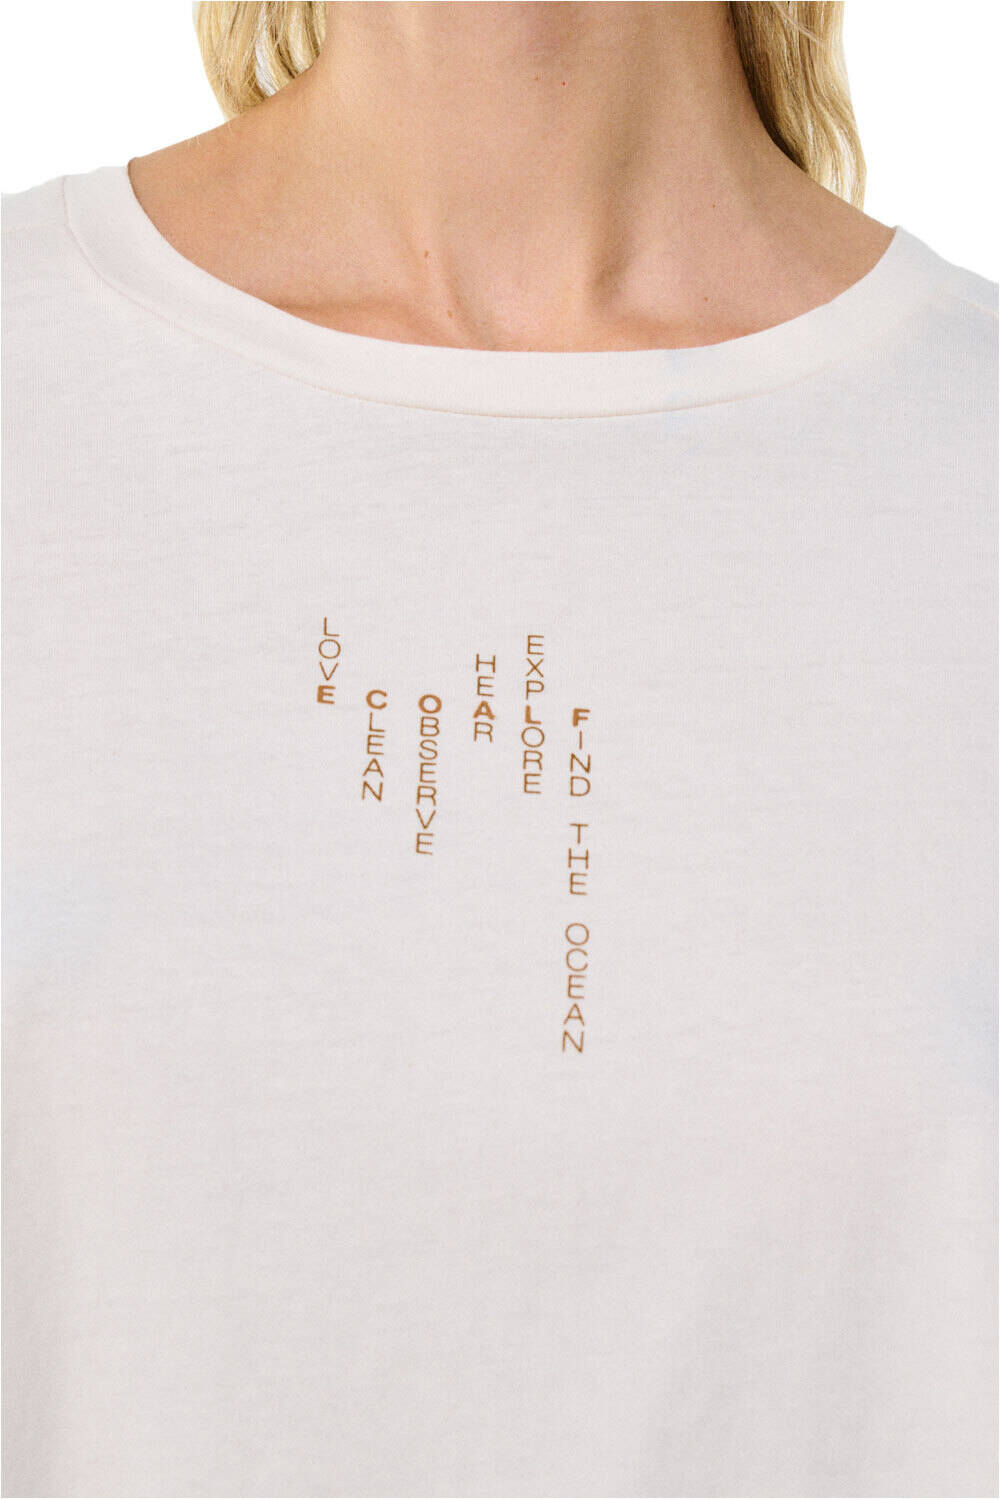 Ecoalf camiseta manga corta mujer BITTERALF T-SHIRT vista detalle